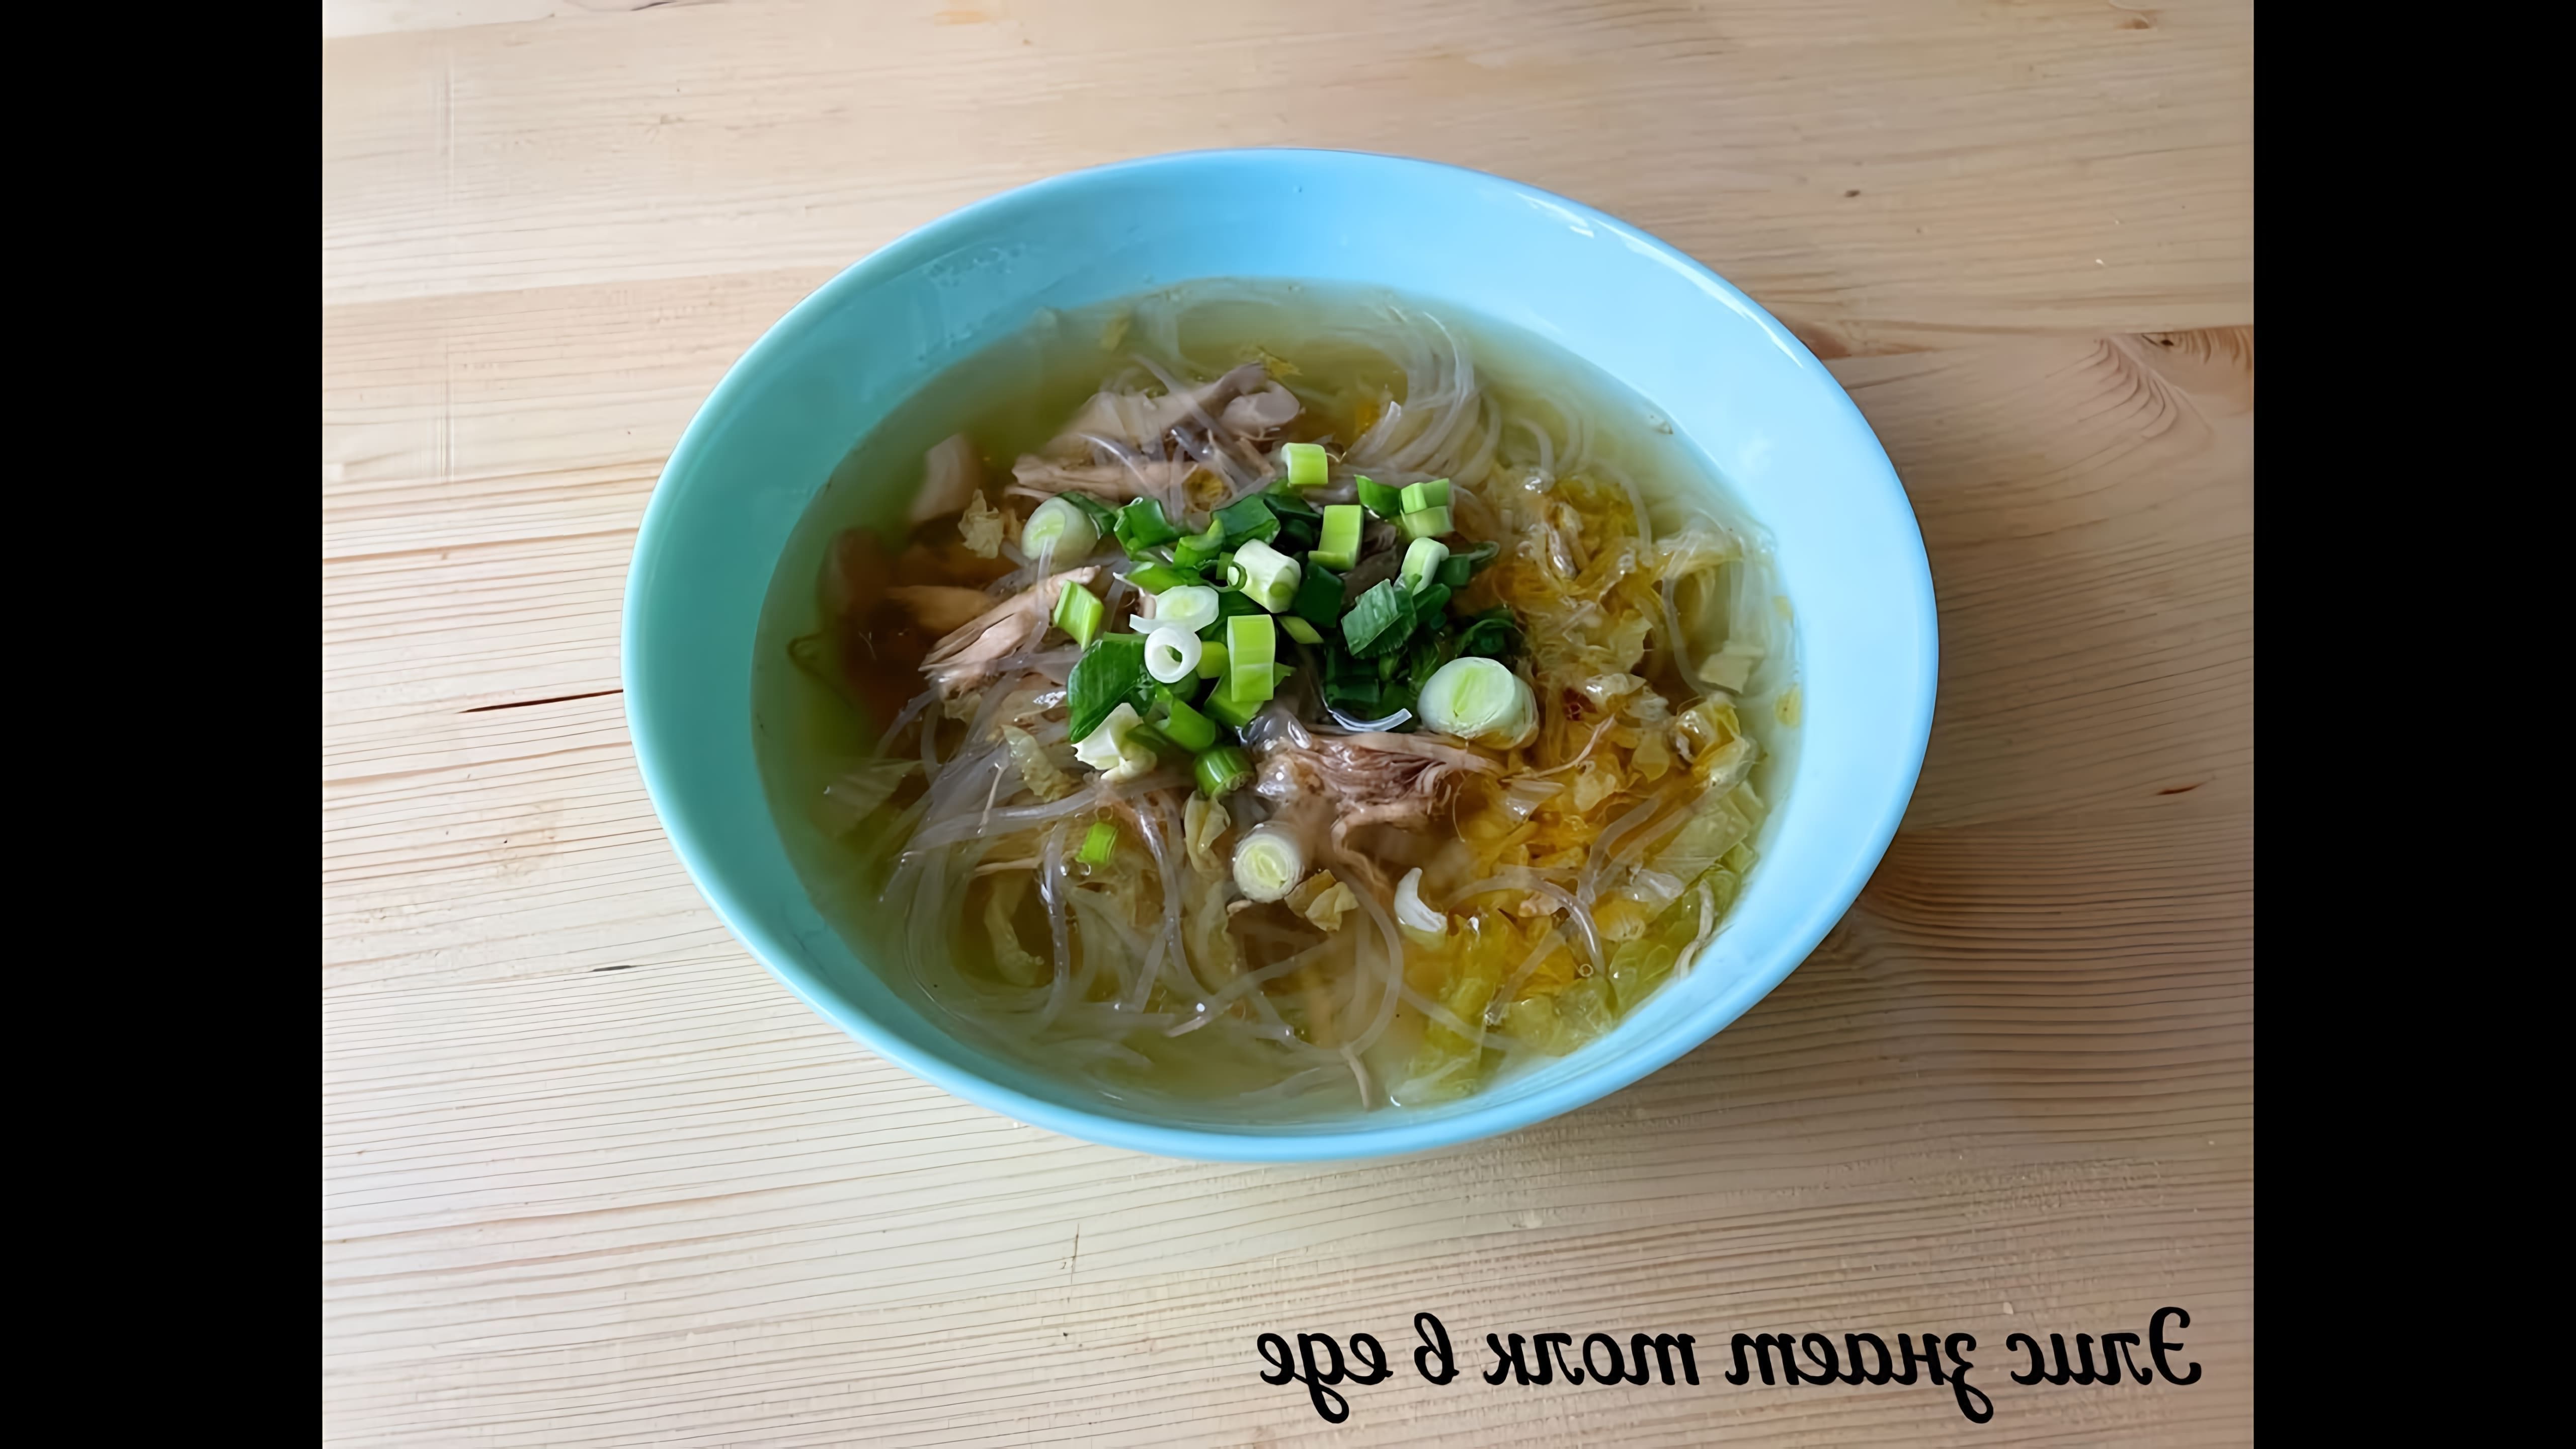 В этом видео демонстрируется процесс приготовления легкого куриного супа с рисовой лапшой на китайский манер